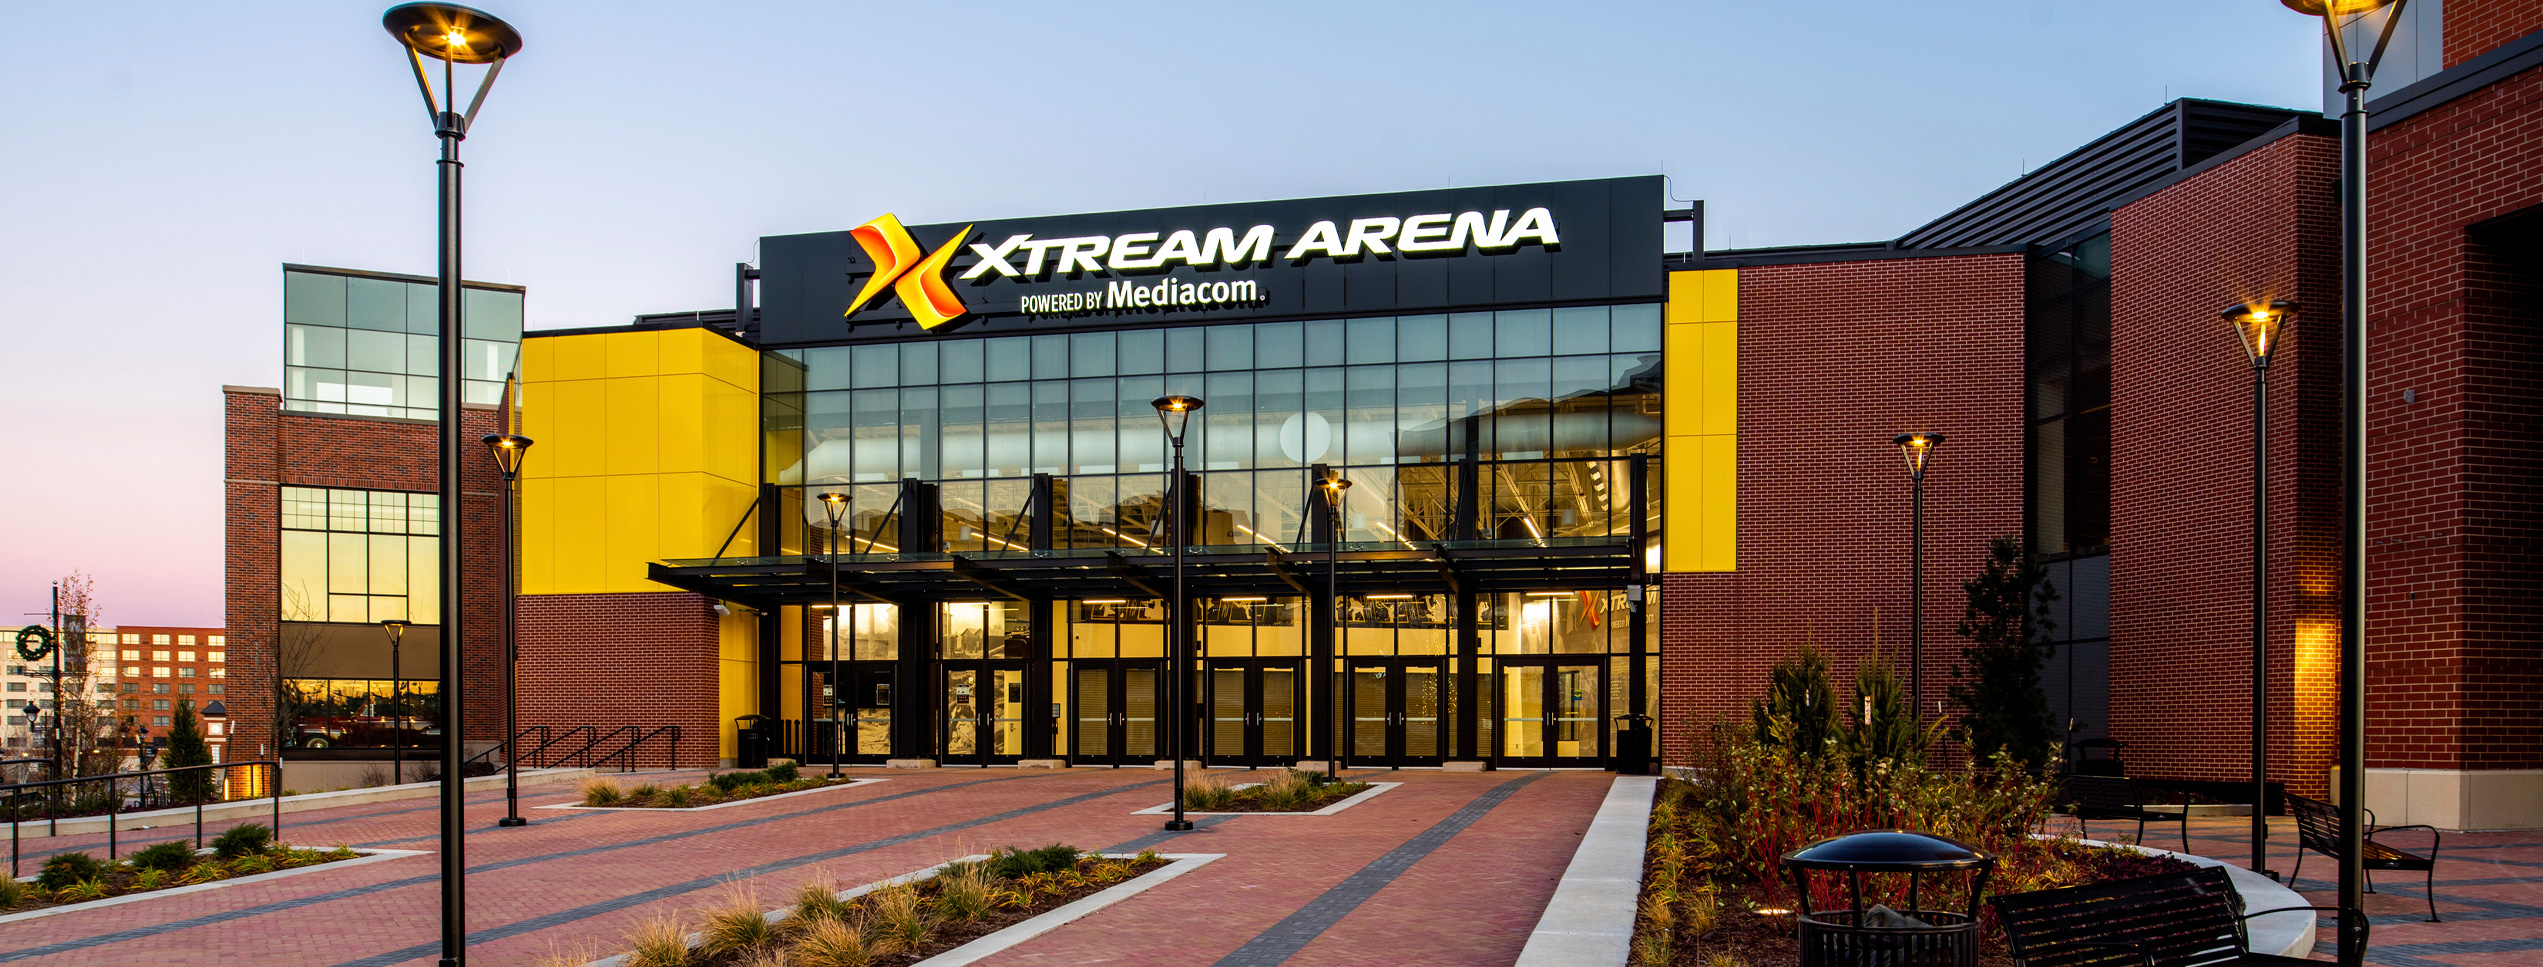 Xtream Arena Powered by Mediacom